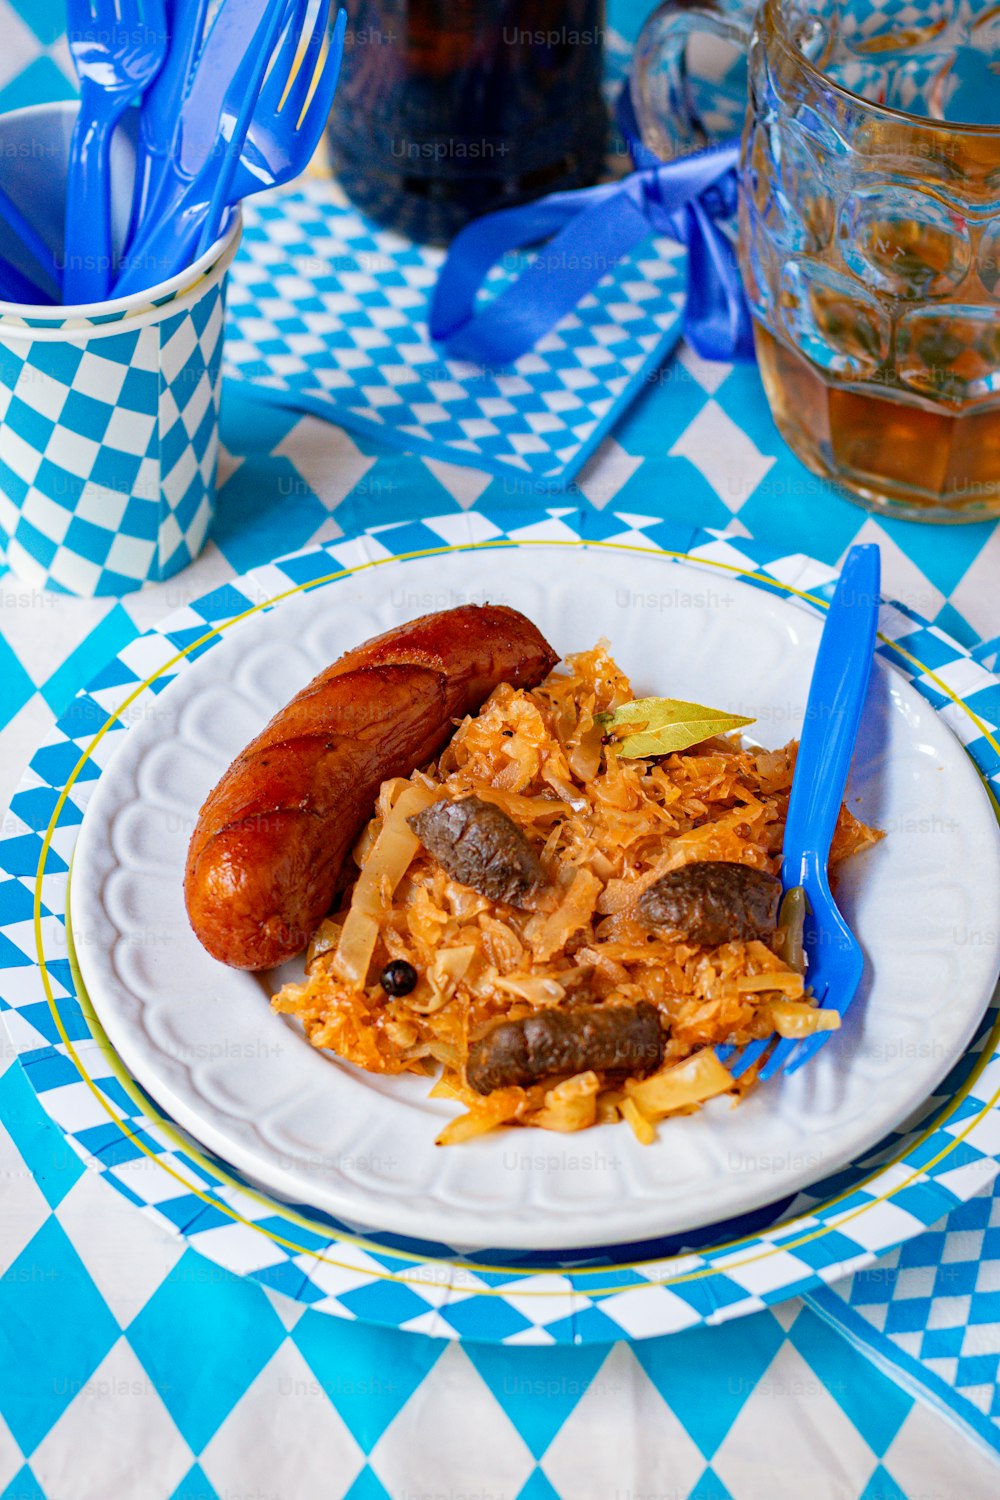 une assiette de nourriture sur une nappe à carreaux bleu et blanc